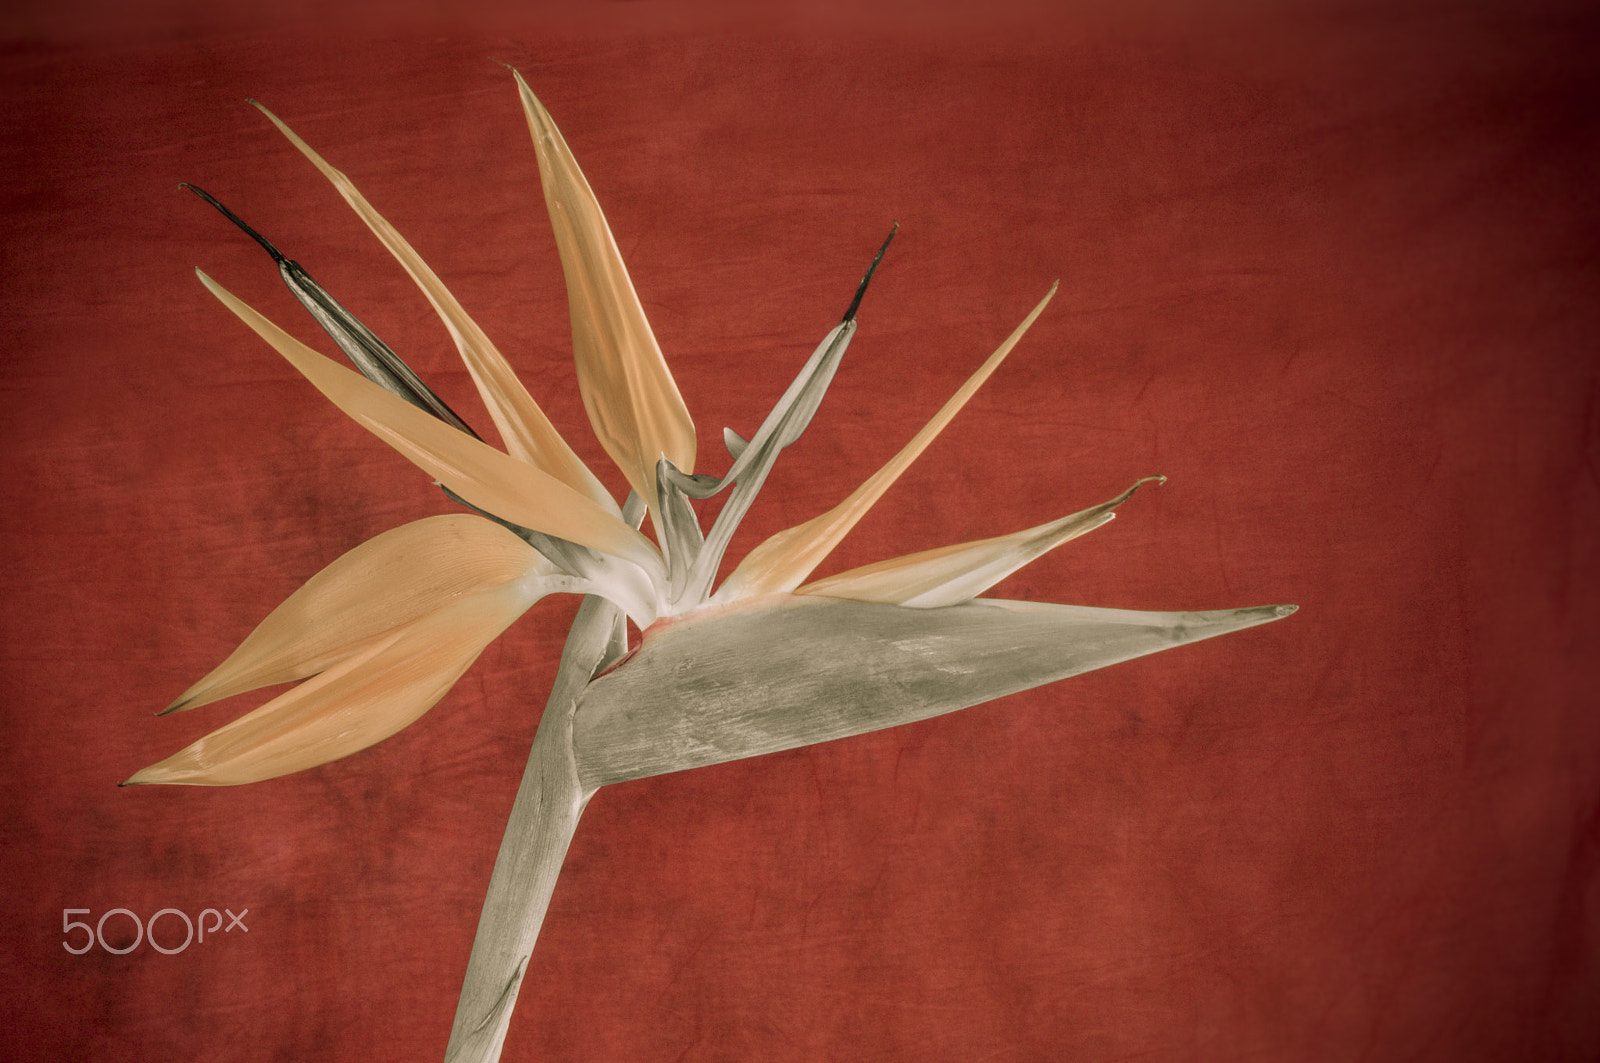 AF Zoom-Nikkor 35-70mm f/2.8D sample photo. Elegant crane flower in bloom / oiseau de paradis photography